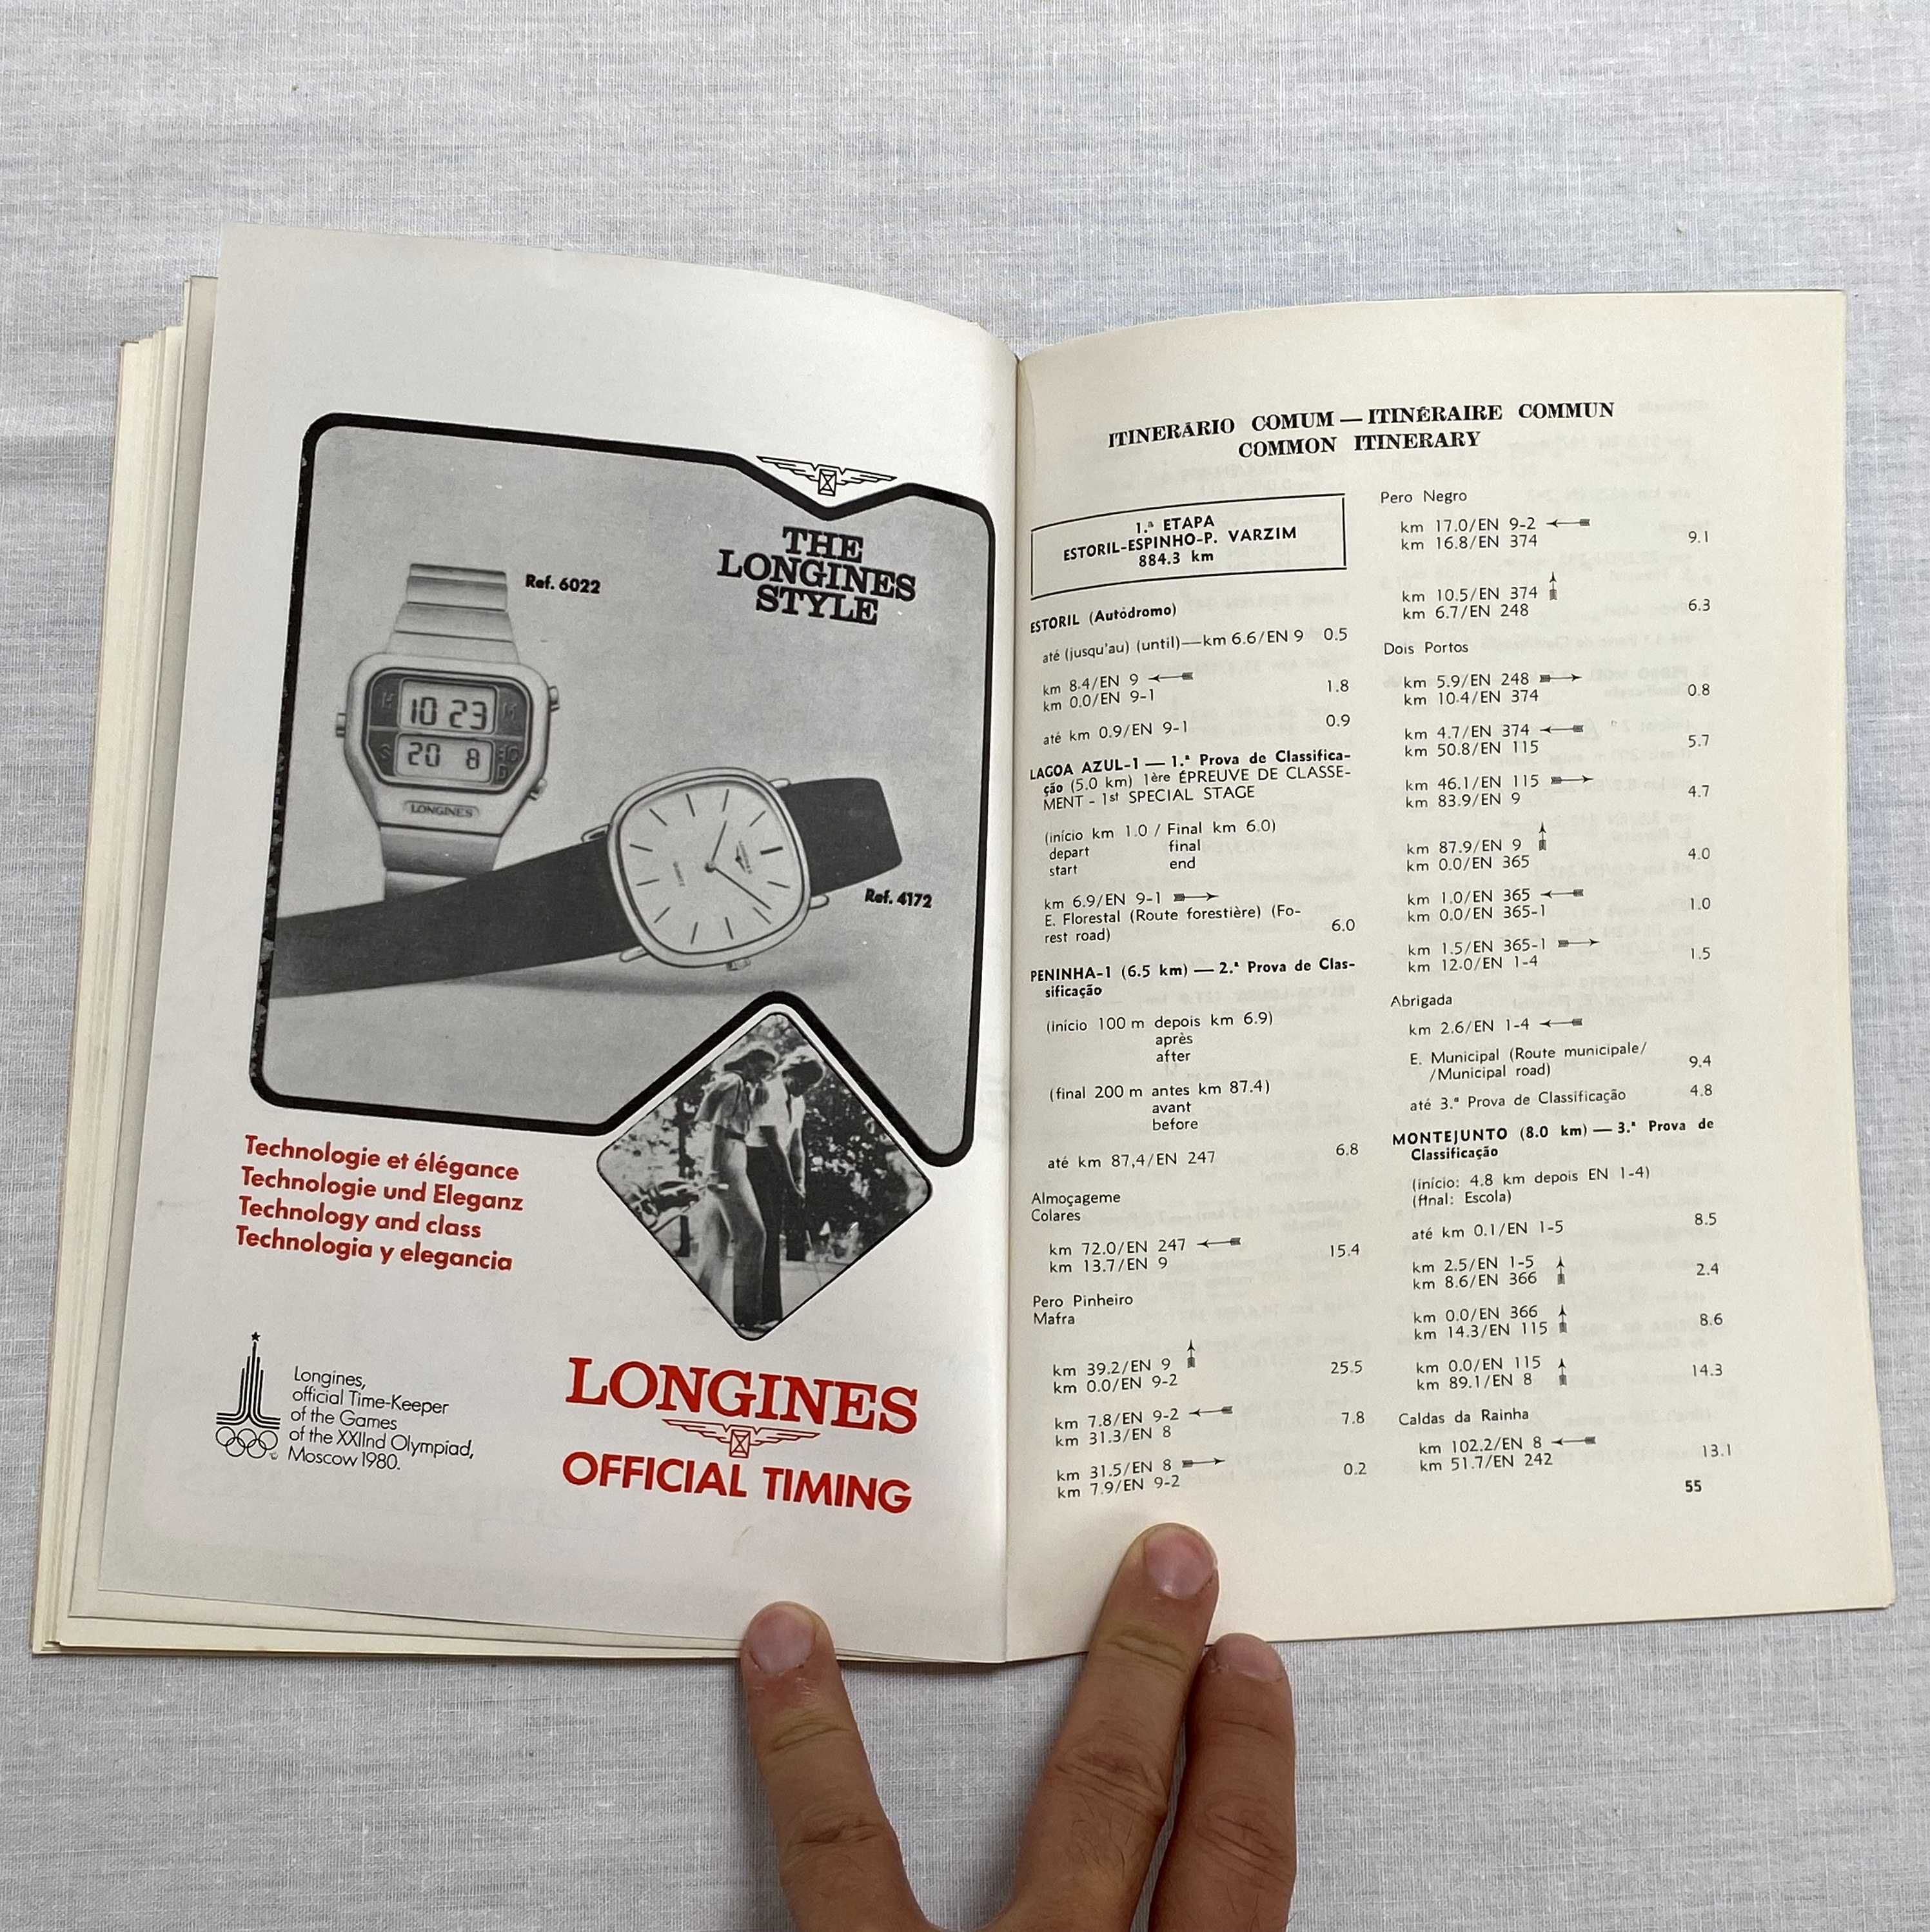 Programa do Rallye Rali Vinho do Porto 1979 com a inscrição